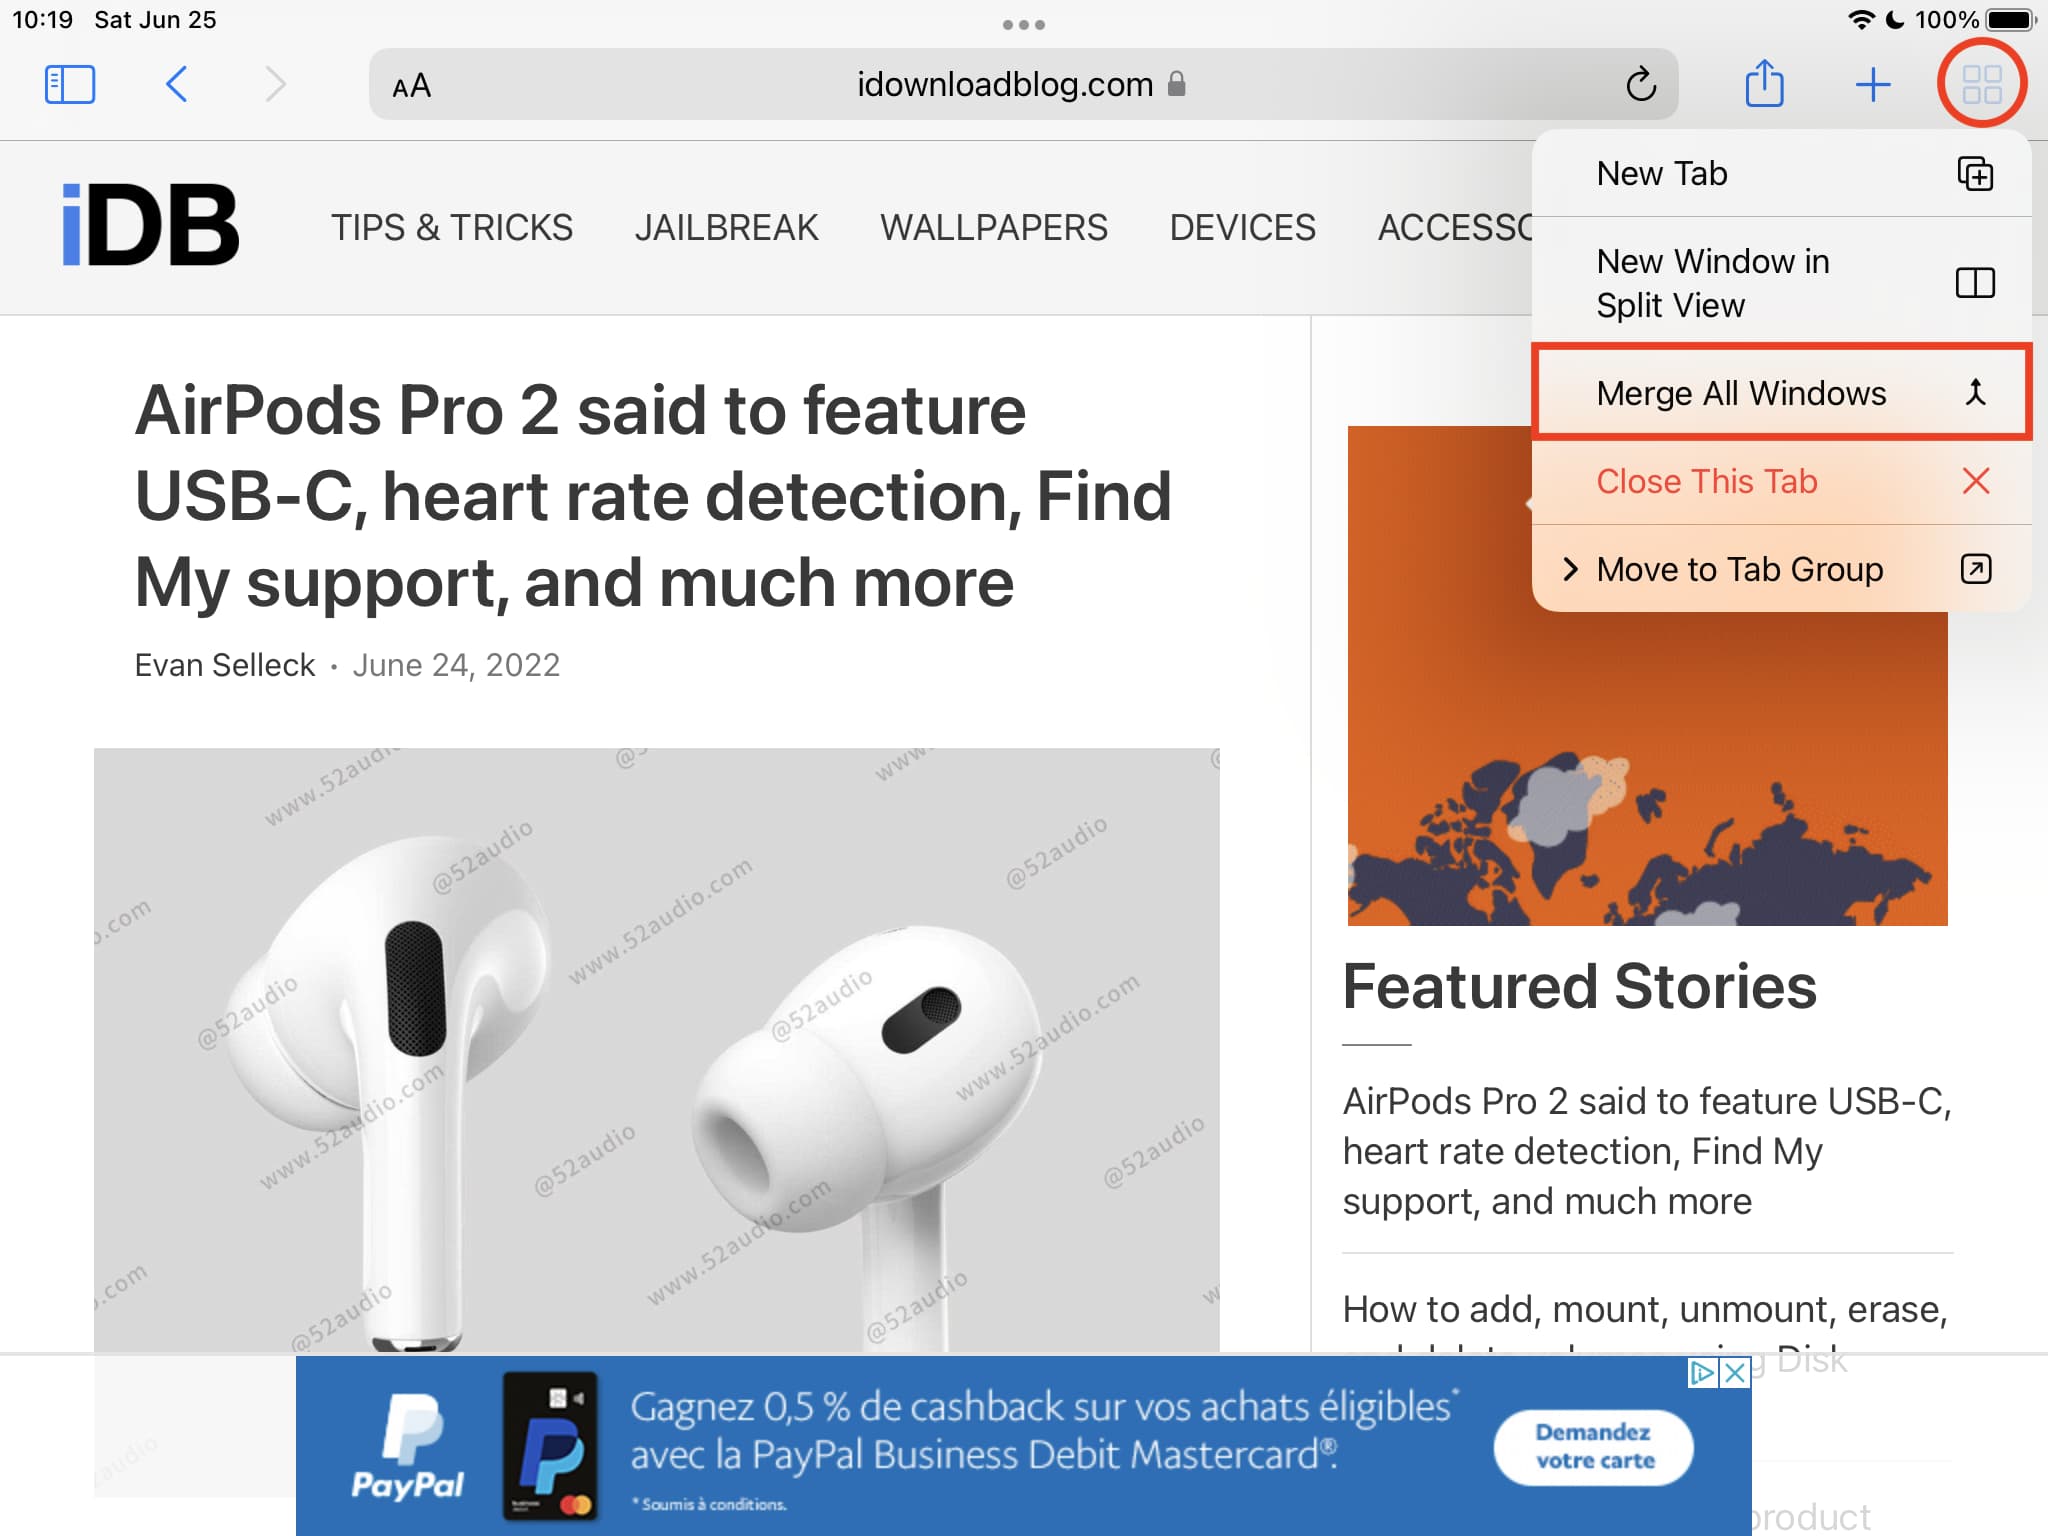 Merge All Windows in Safari on iPad